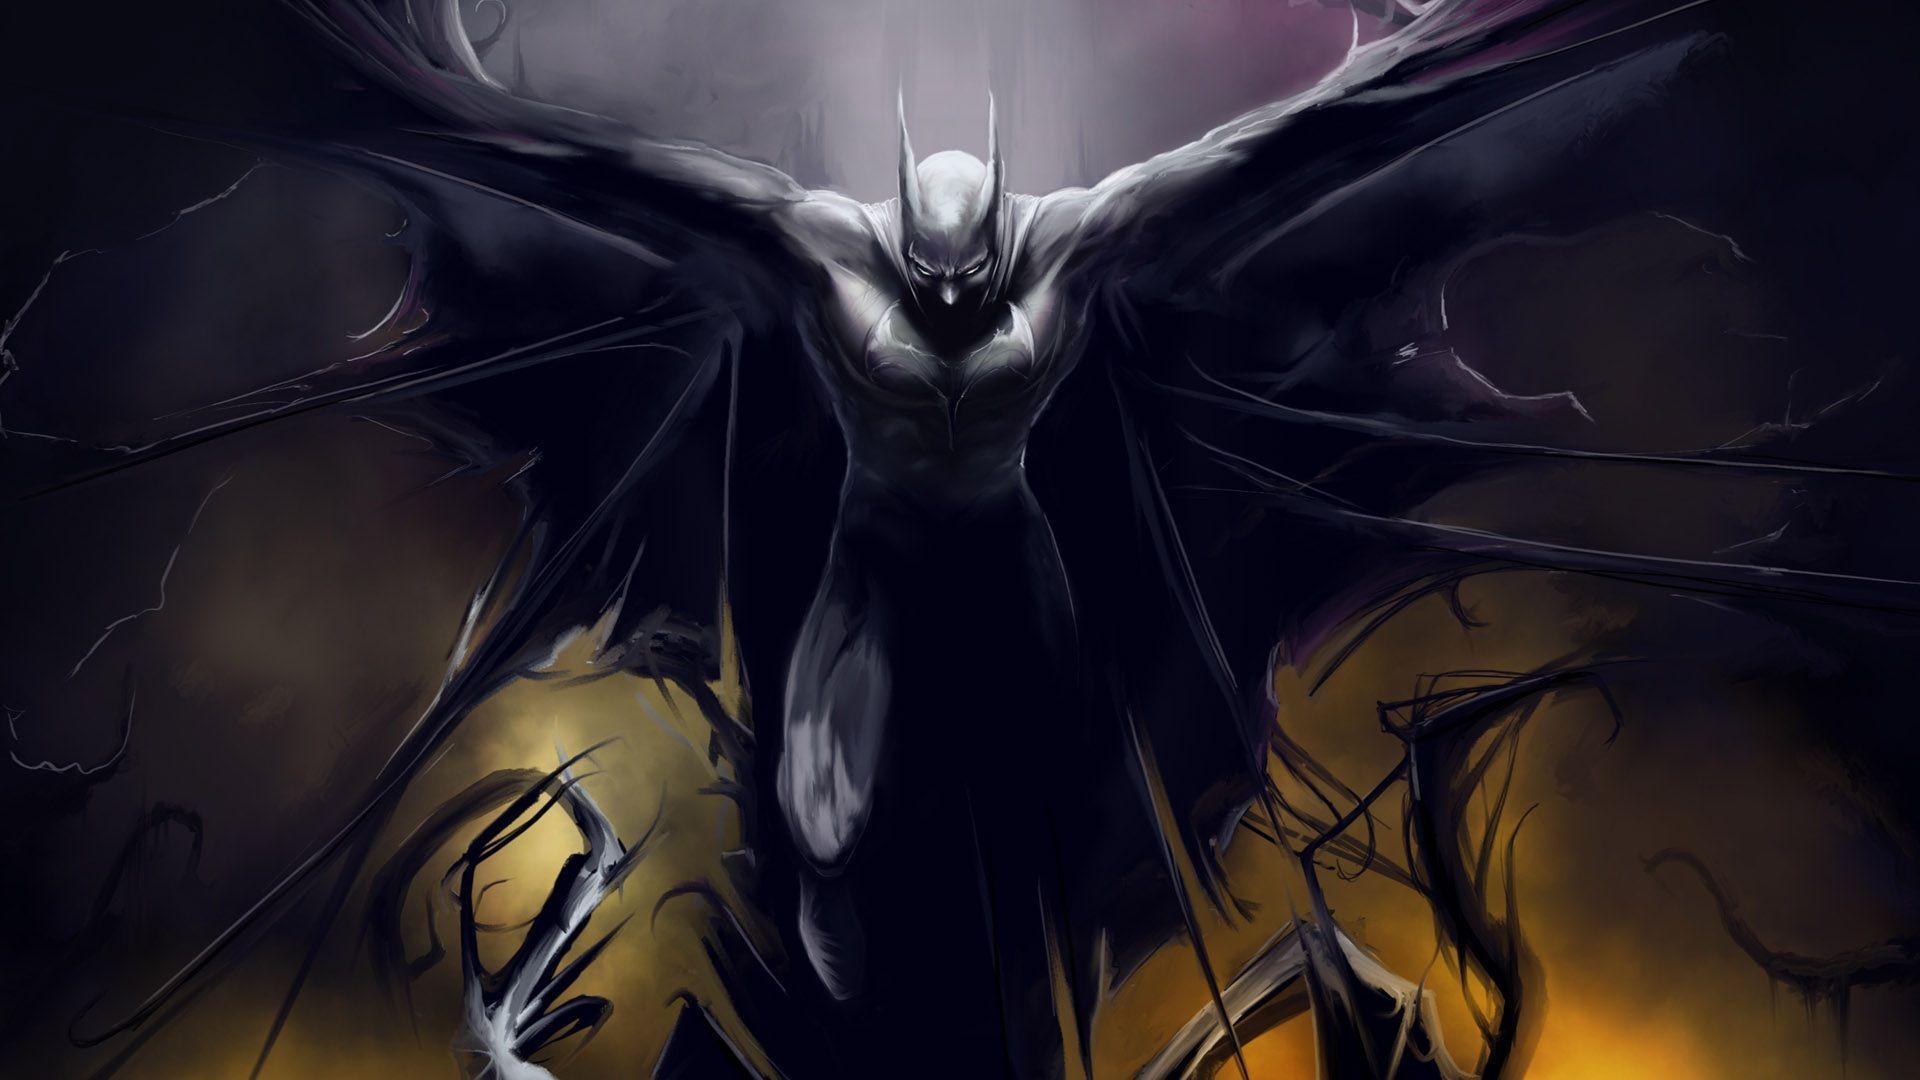 Badass Batman HD Wallpaper. Download HD Wallpaper, High